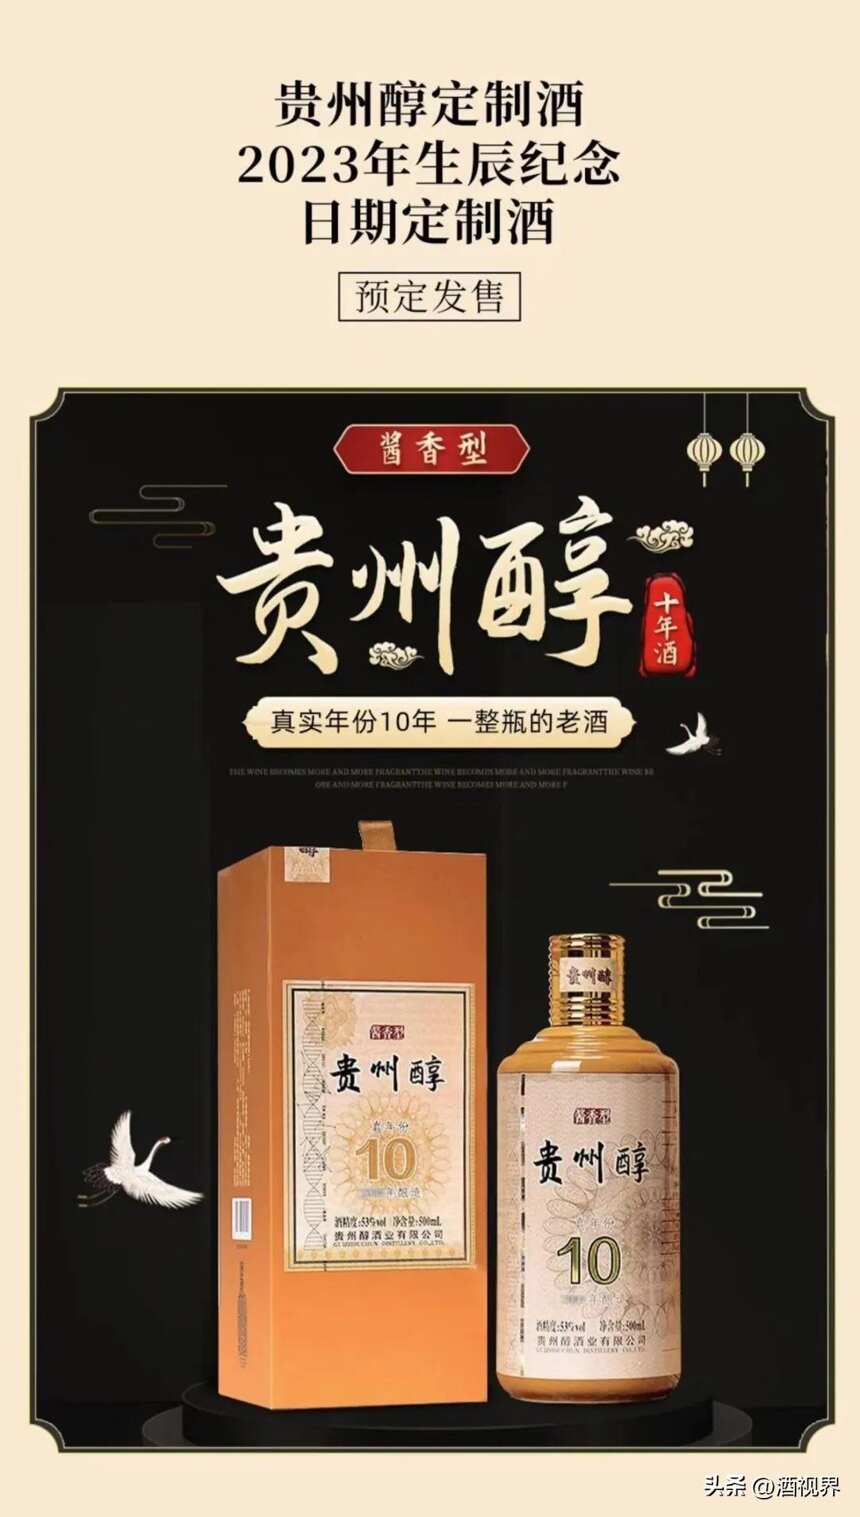 贵州醇、贵州青酒签约阿里，打造“日期酒”预售模式